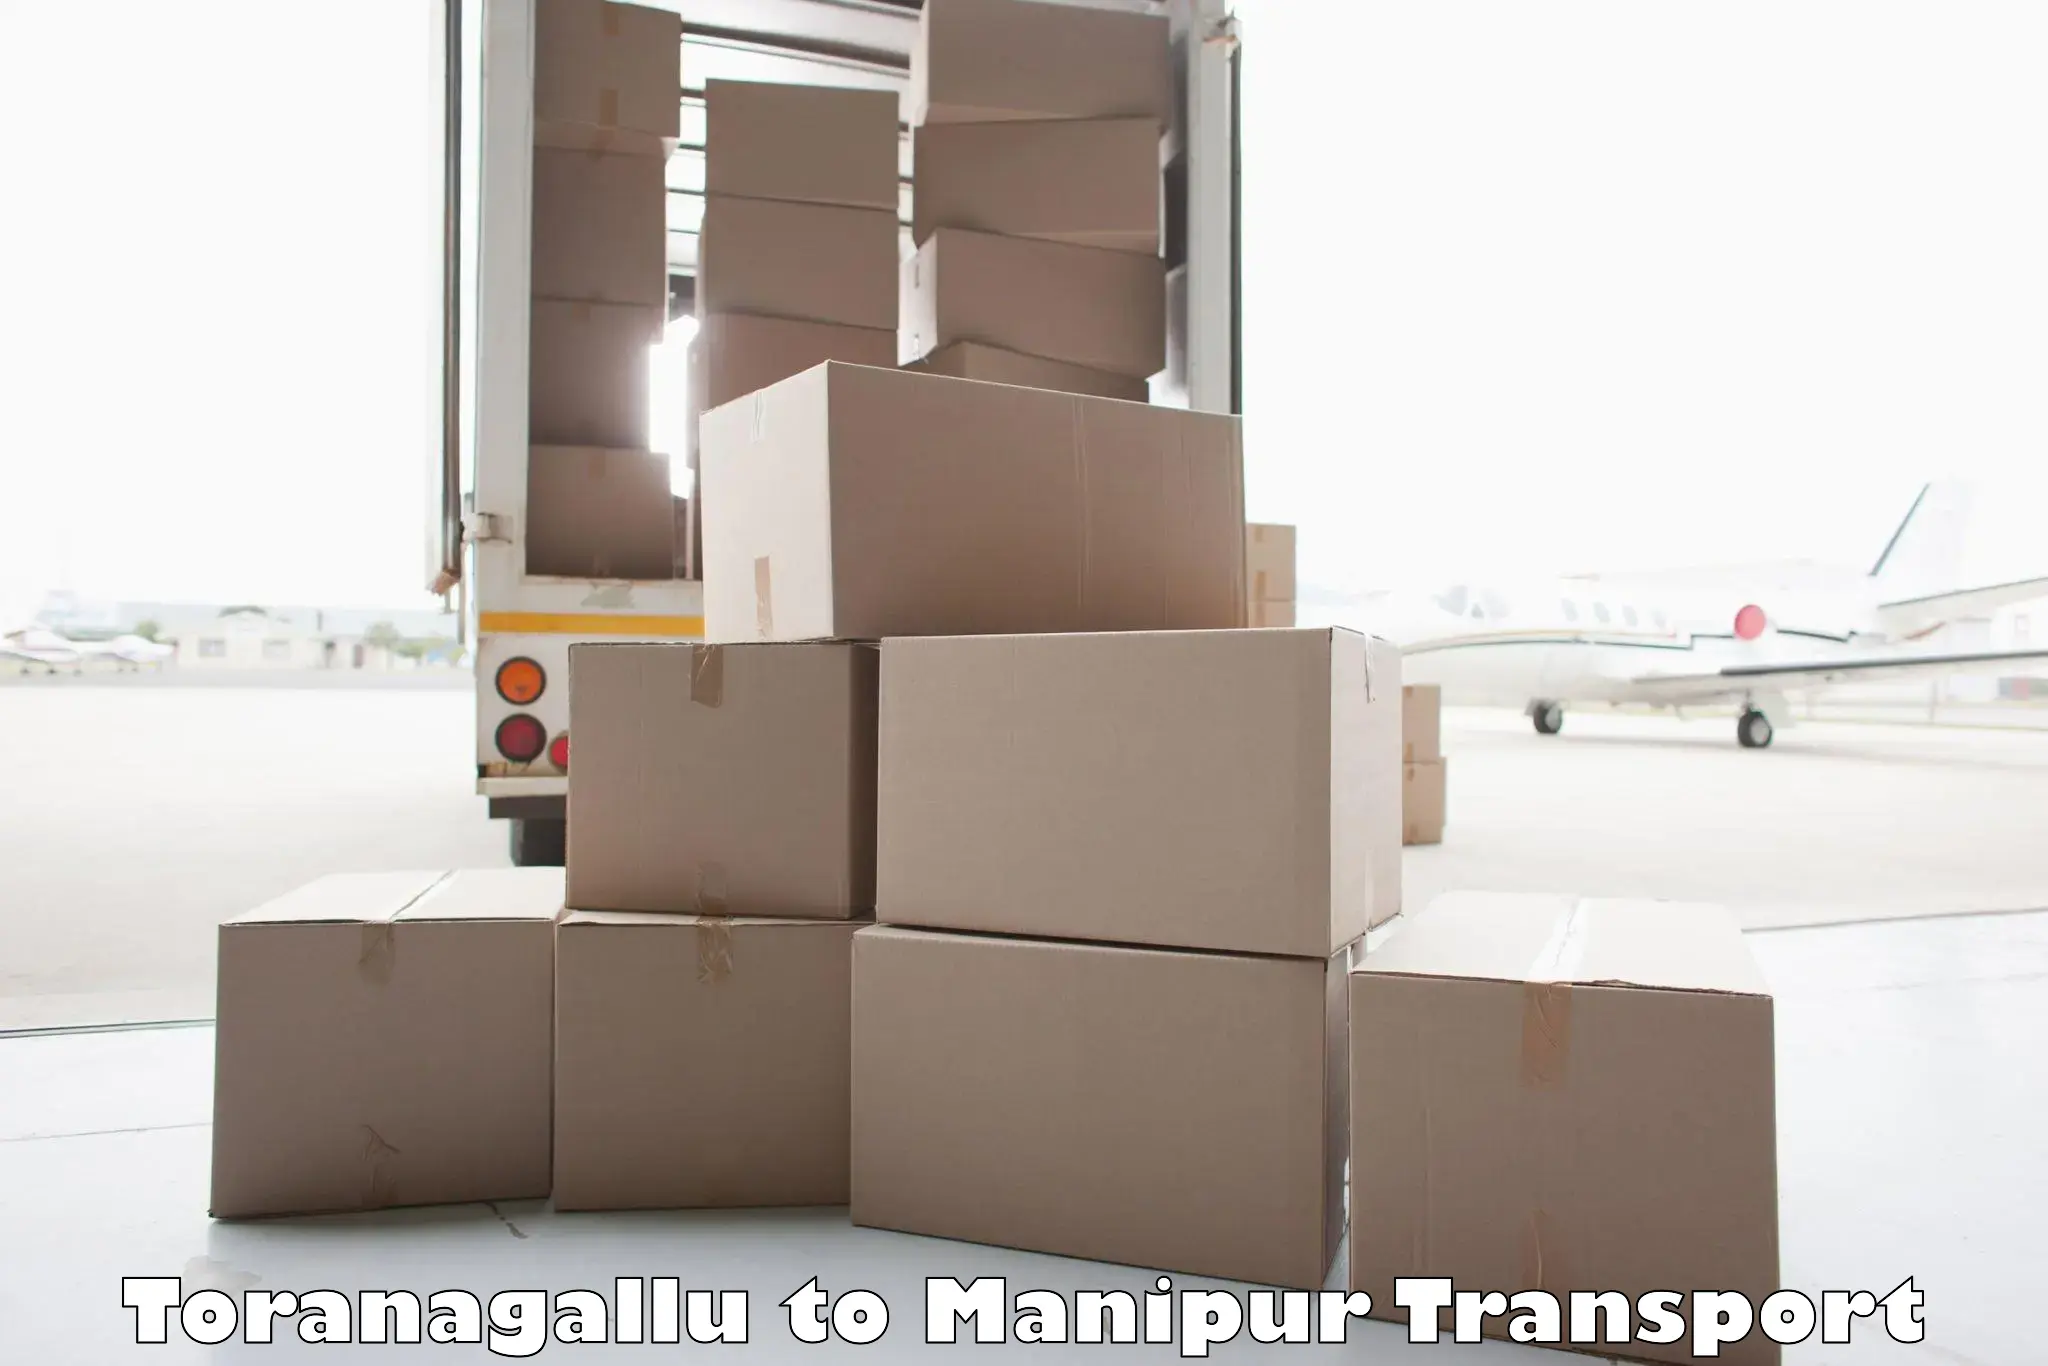 All India transport service Toranagallu to Kanti